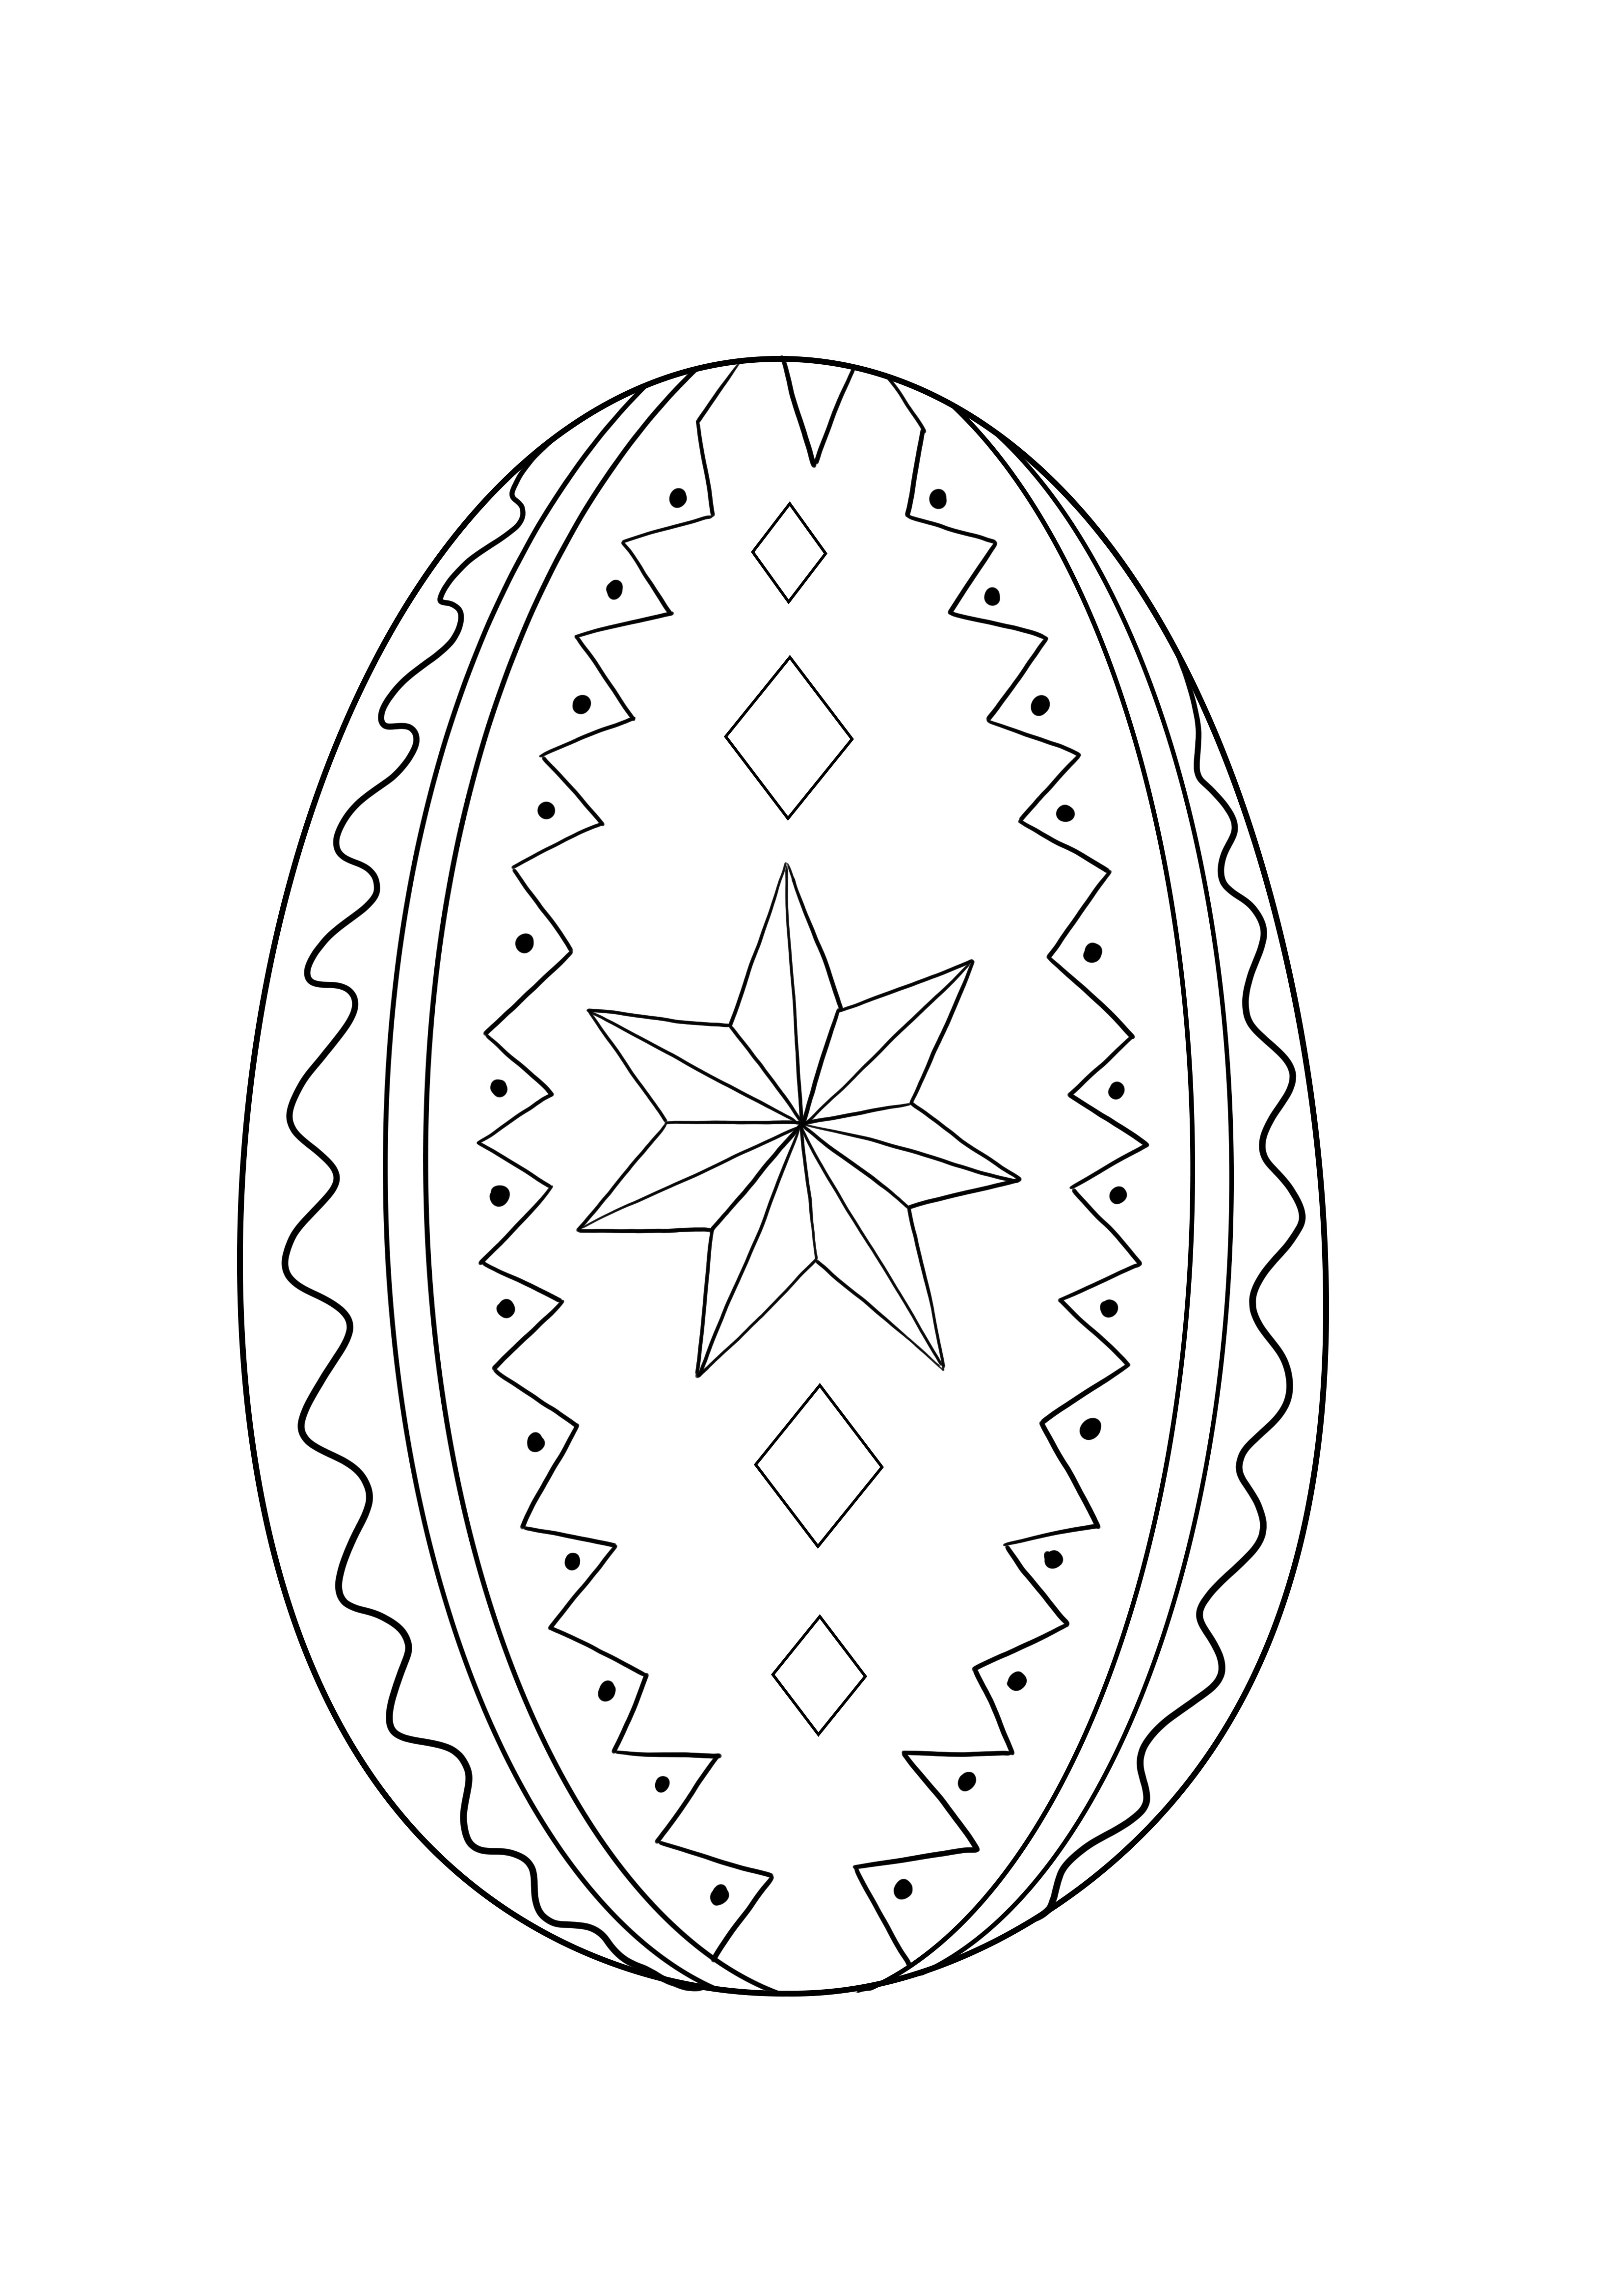 Imagem de ovo de páscoa decorada para imprimir e colorir